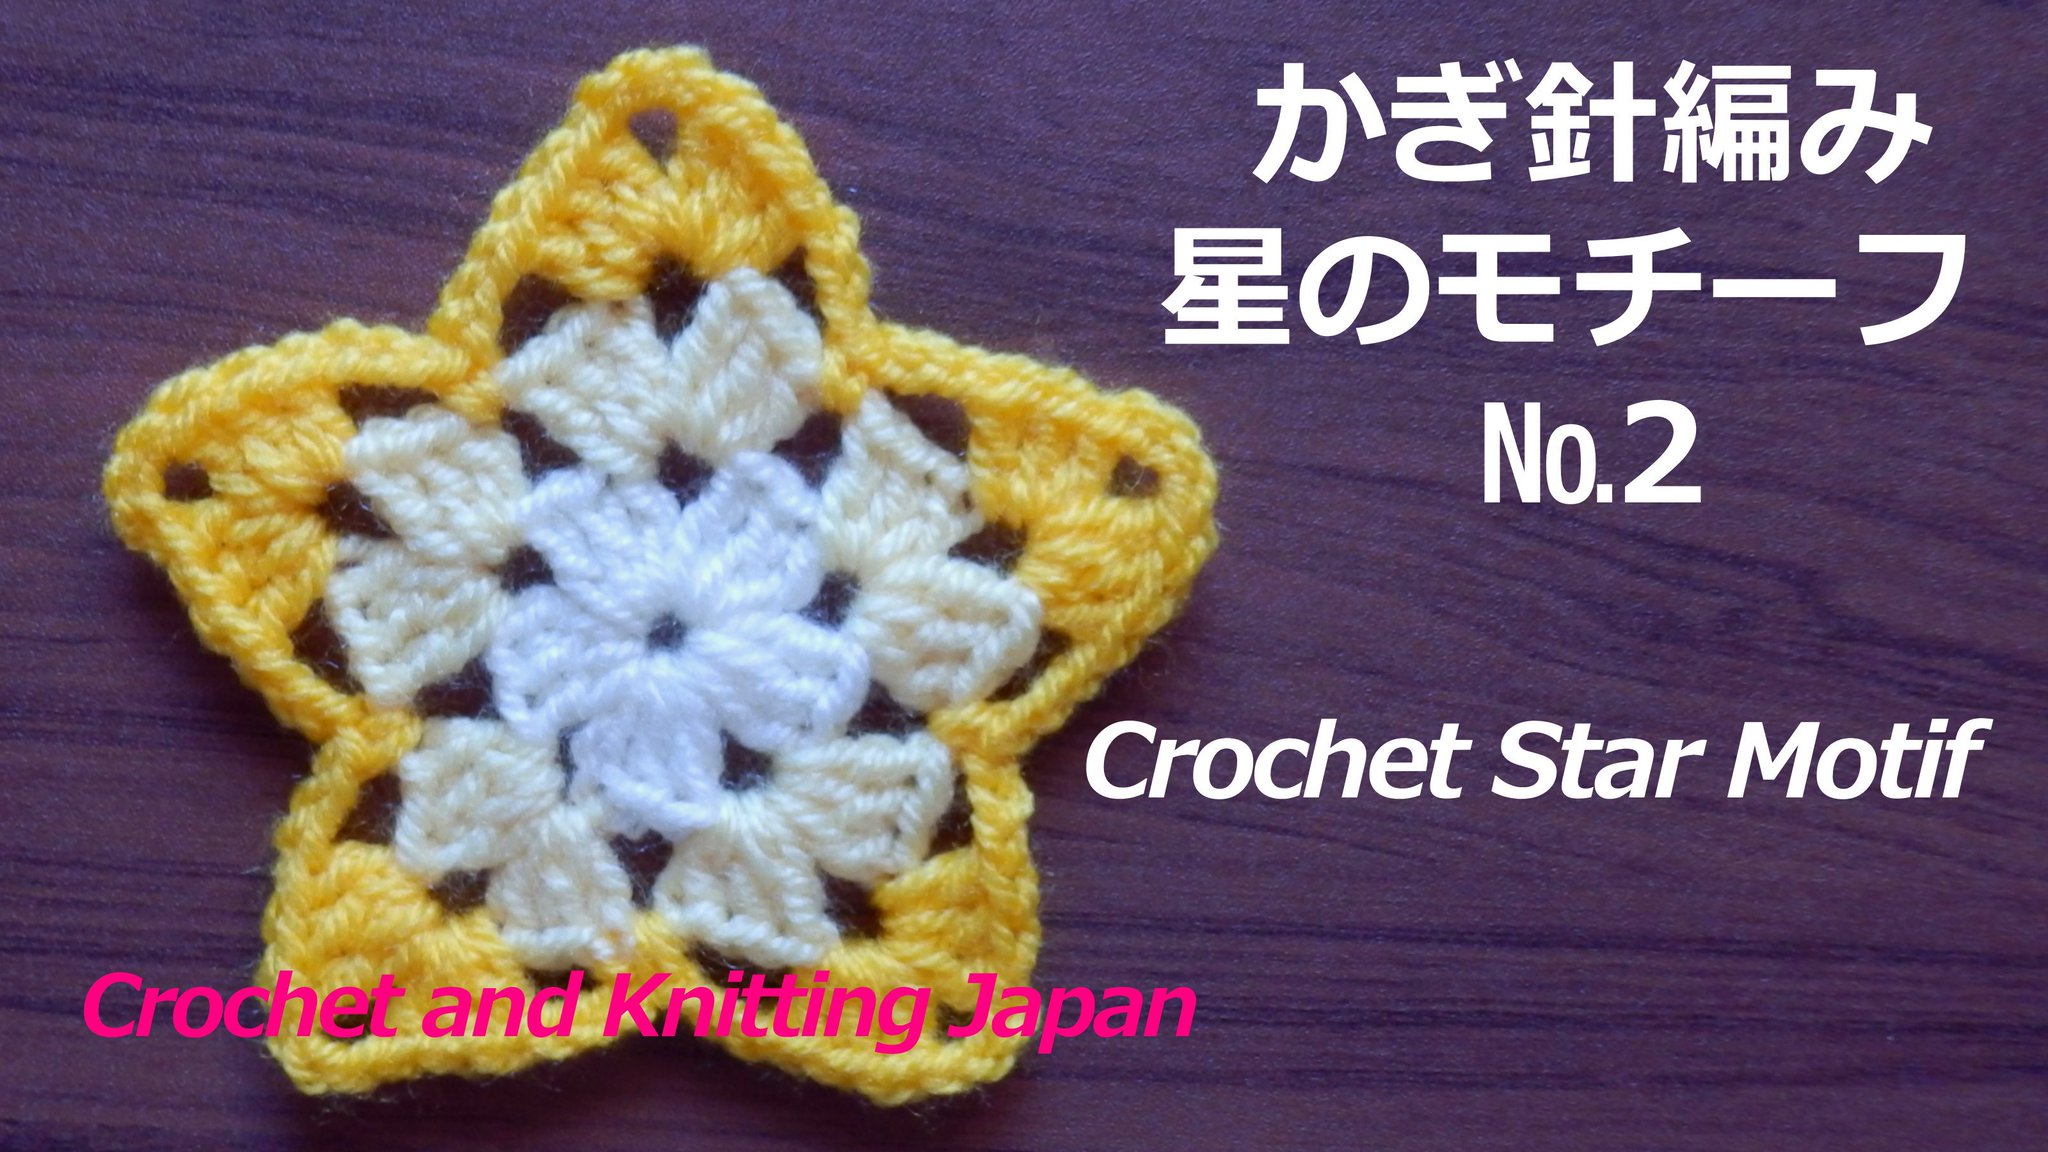 Crochet And Knittingクロッシェジャパン A Twitter かぎ針編み 星のモチーフ 2 の編み方 Crochet Star Motif Crochet And Knitting Japan T Co Ggyeqmfjmz かぎ針編みの星のモチーフを3色で編みました コースターにも 最後はとじ針で糸始末をします